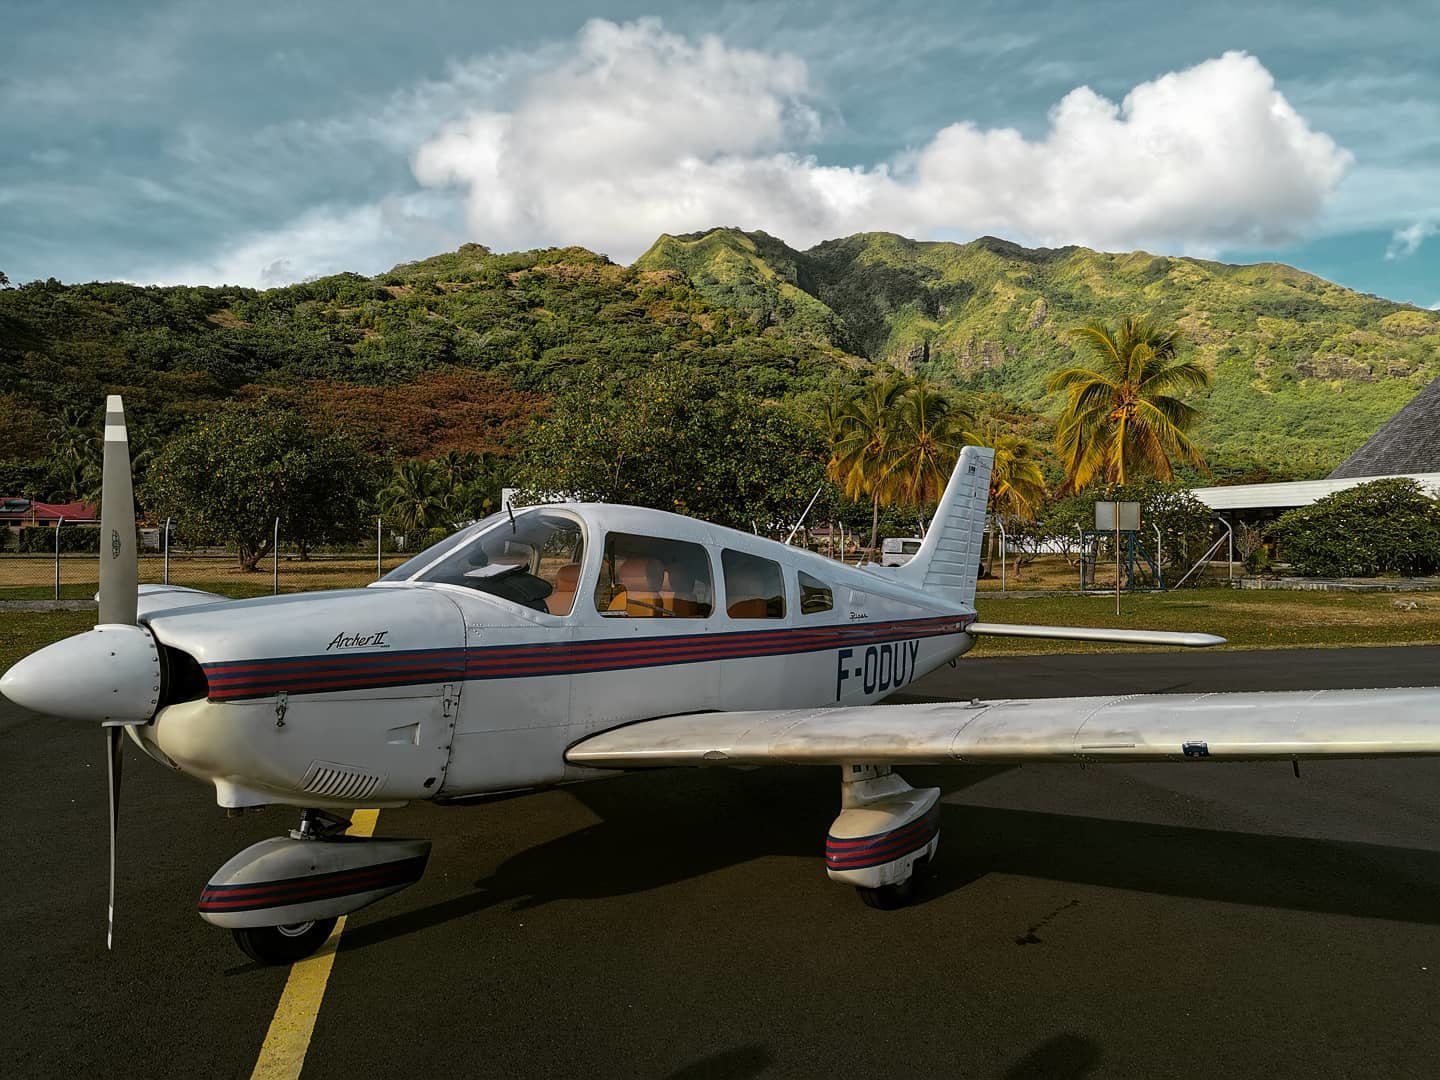 Un petit avion à trois places sur une piste au pieds de montagnes tropicales